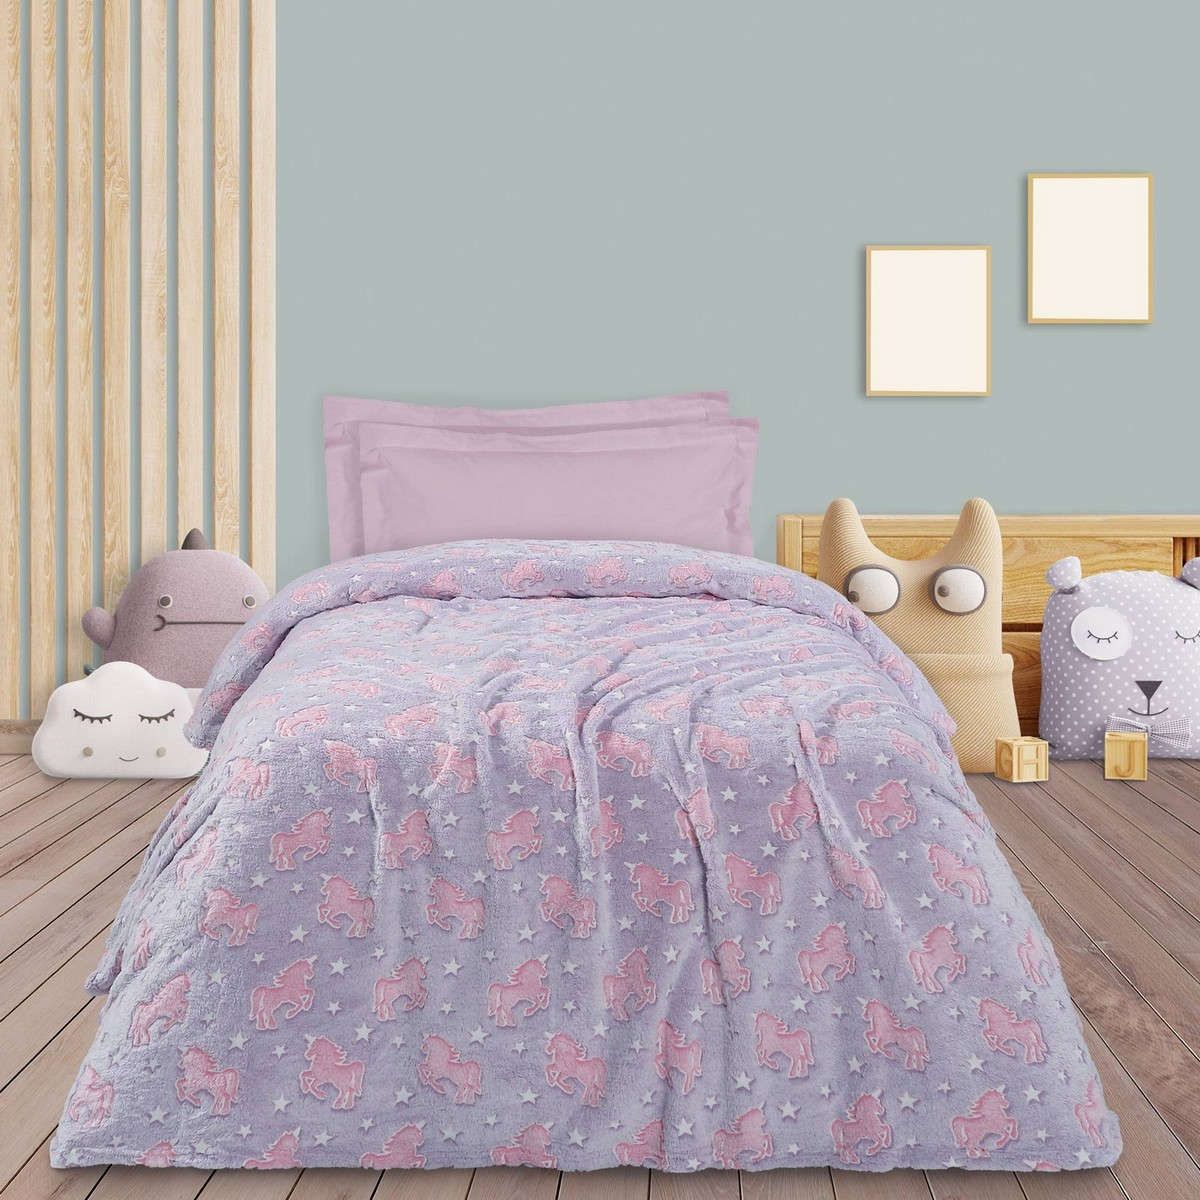 Παιδική κουβέρτα fleece μονή 4833 purple-pink das home